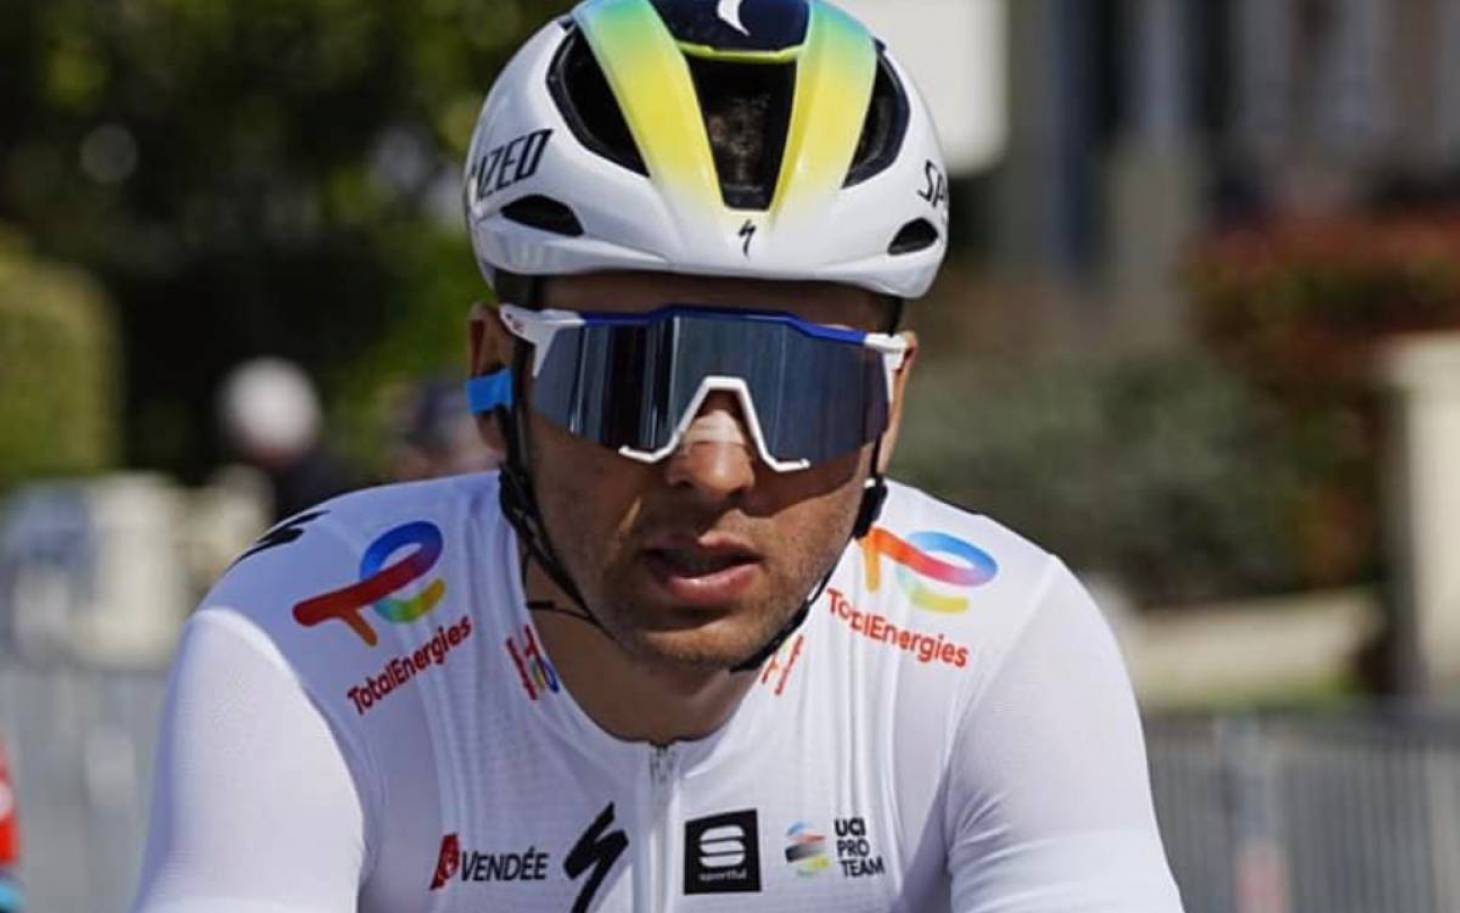 Cyclisme - Valentin Ferron, 3e de Région Pays de Loire